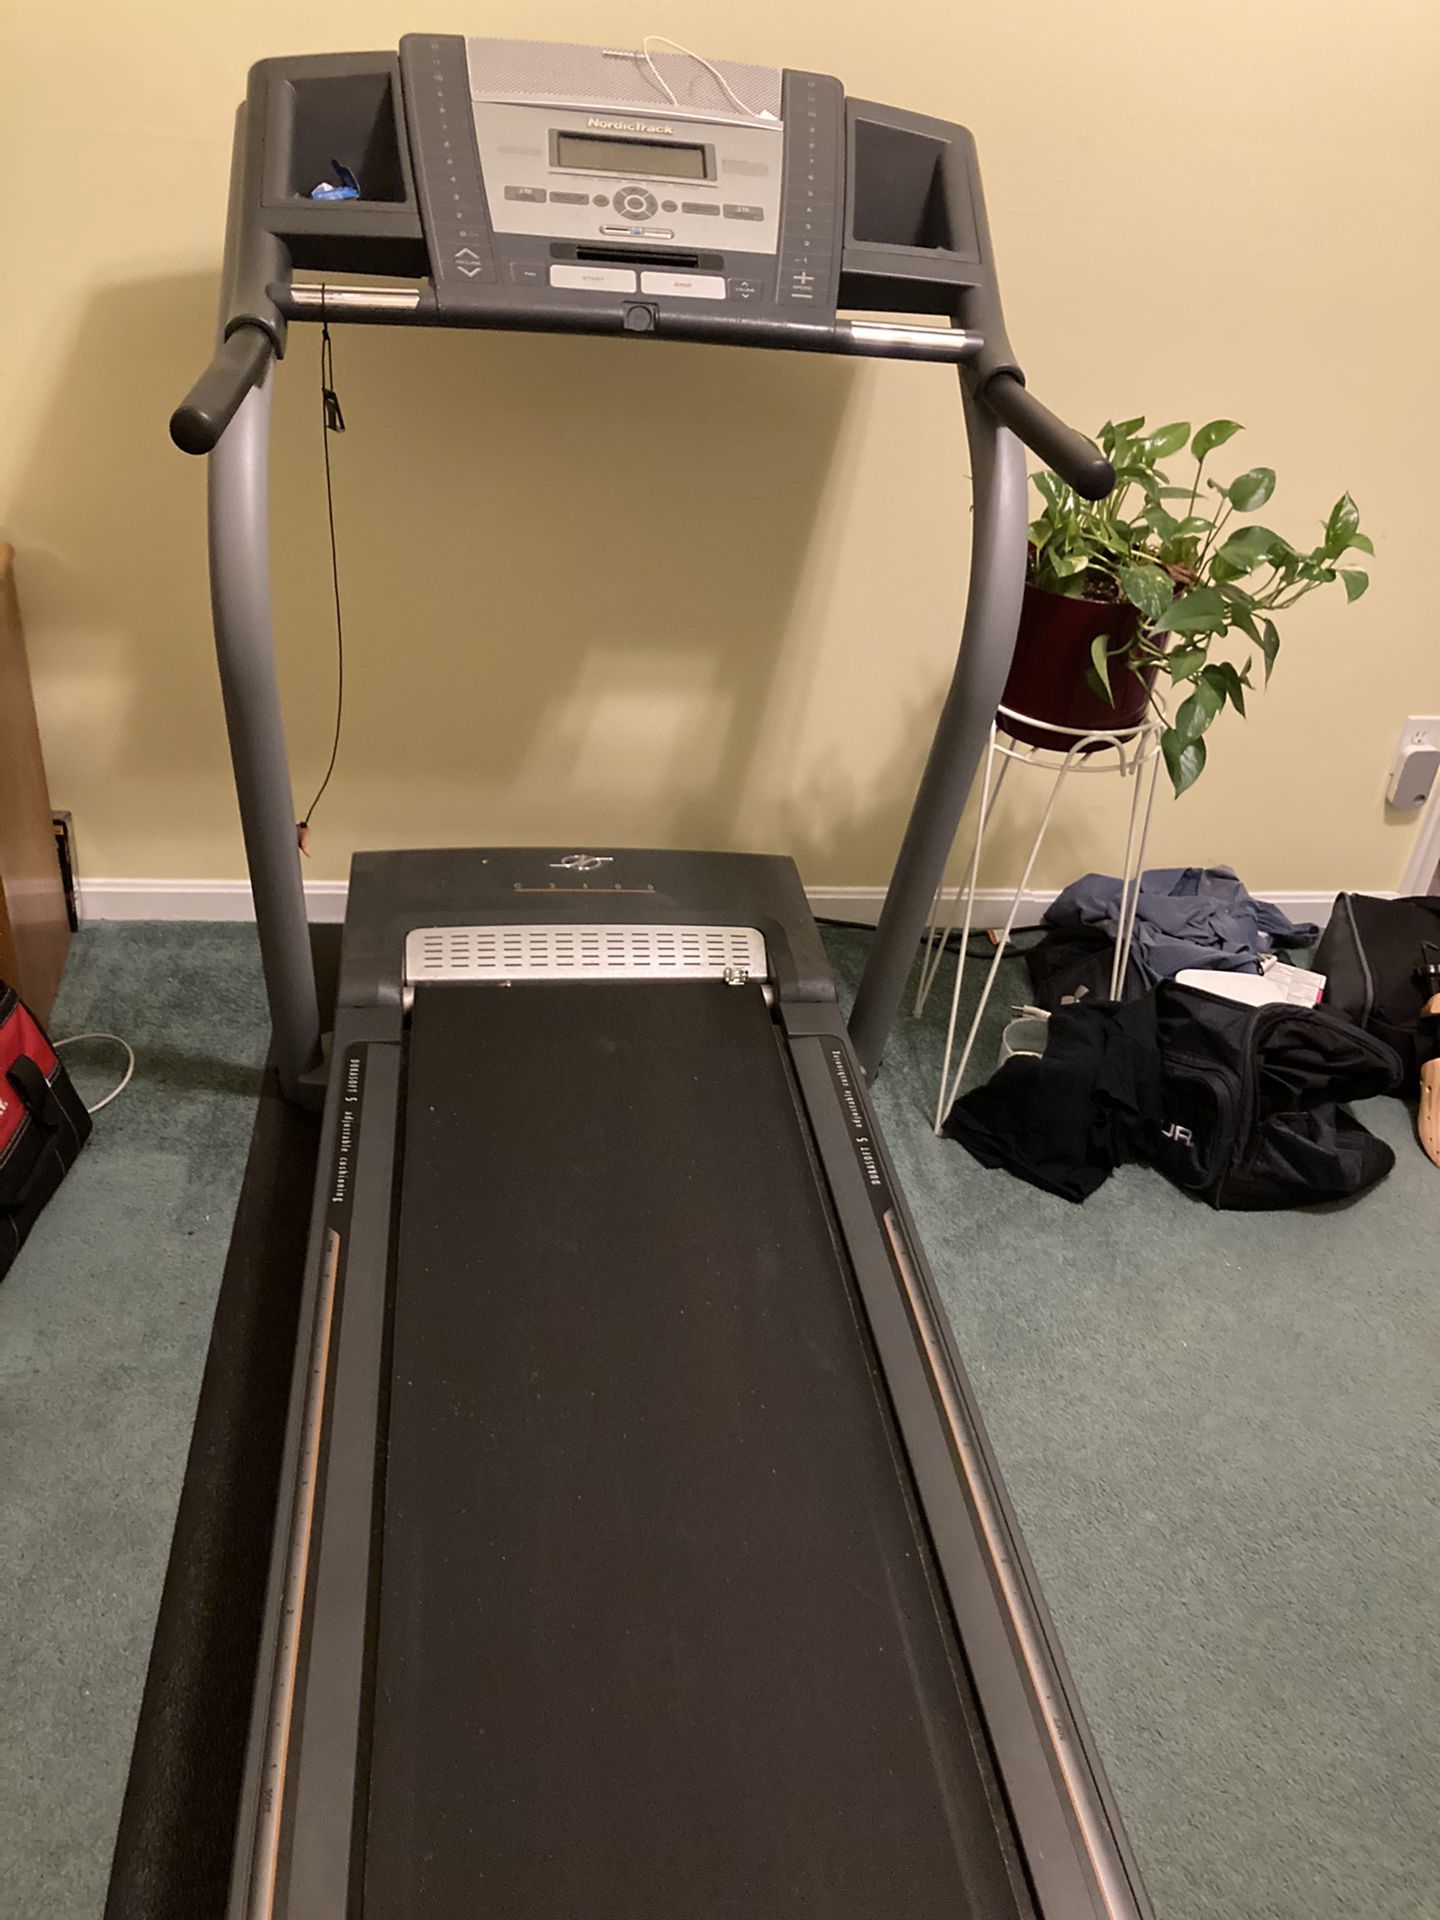 Nordic trac c2500 treadmill